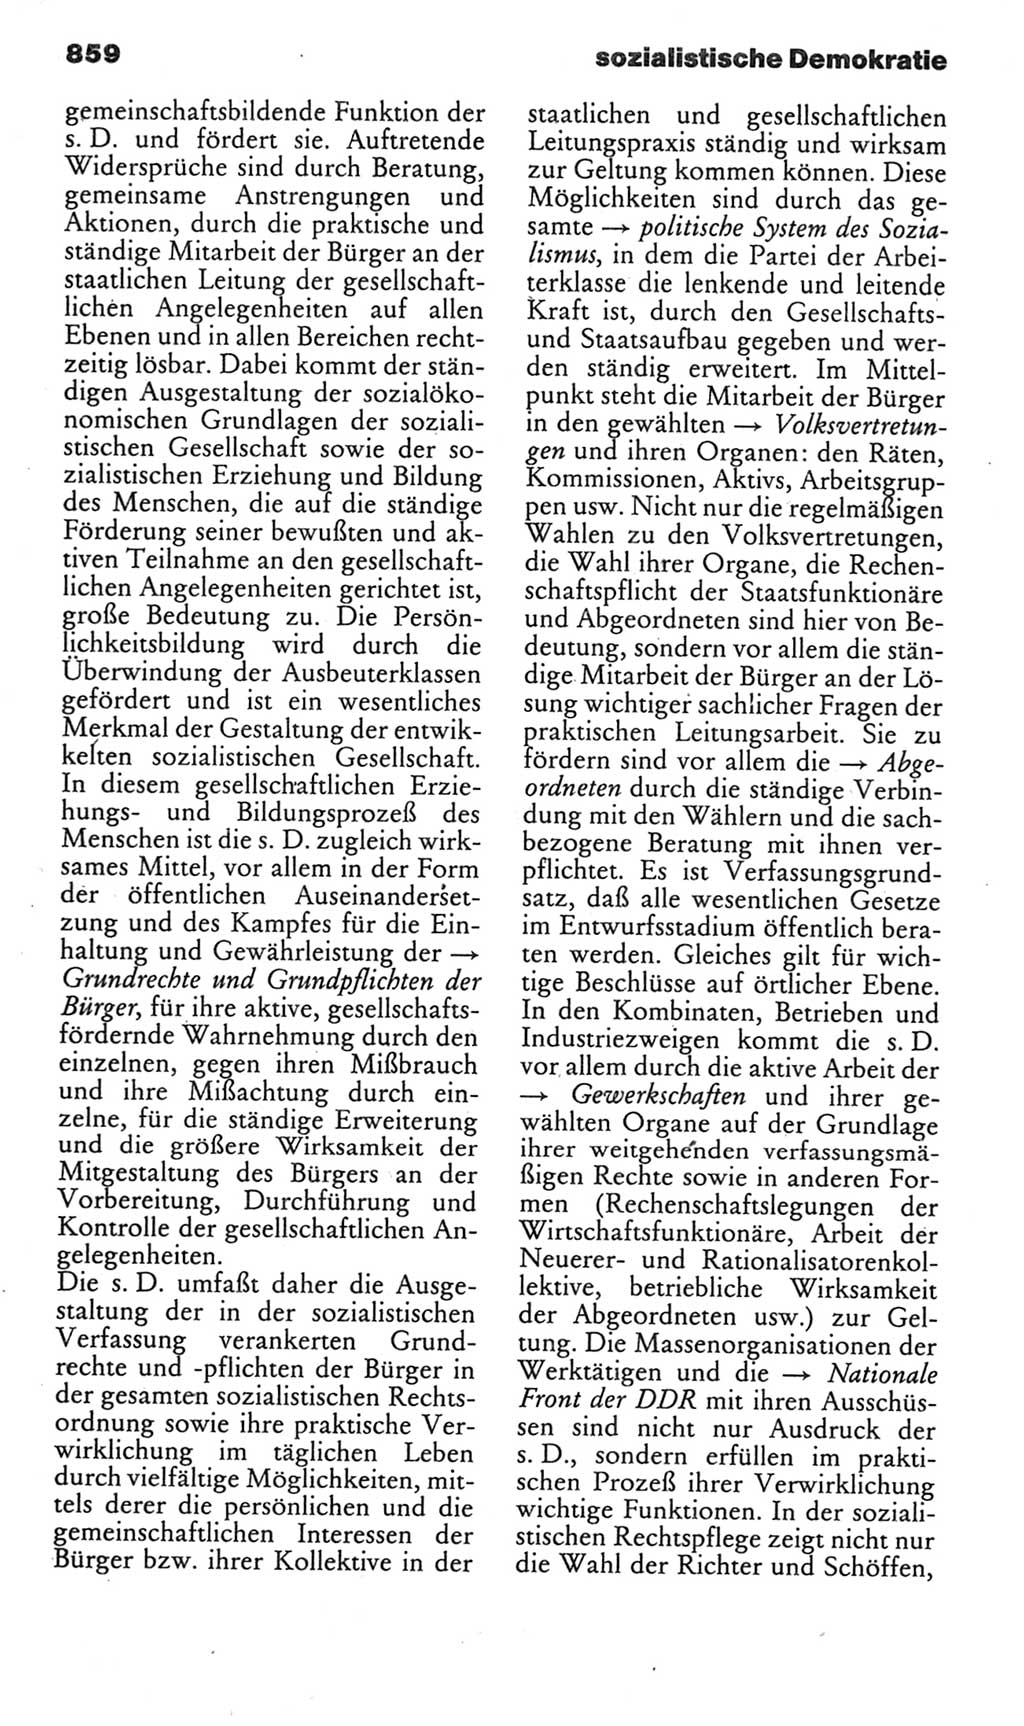 Kleines politisches Wörterbuch [Deutsche Demokratische Republik (DDR)] 1985, Seite 859 (Kl. pol. Wb. DDR 1985, S. 859)